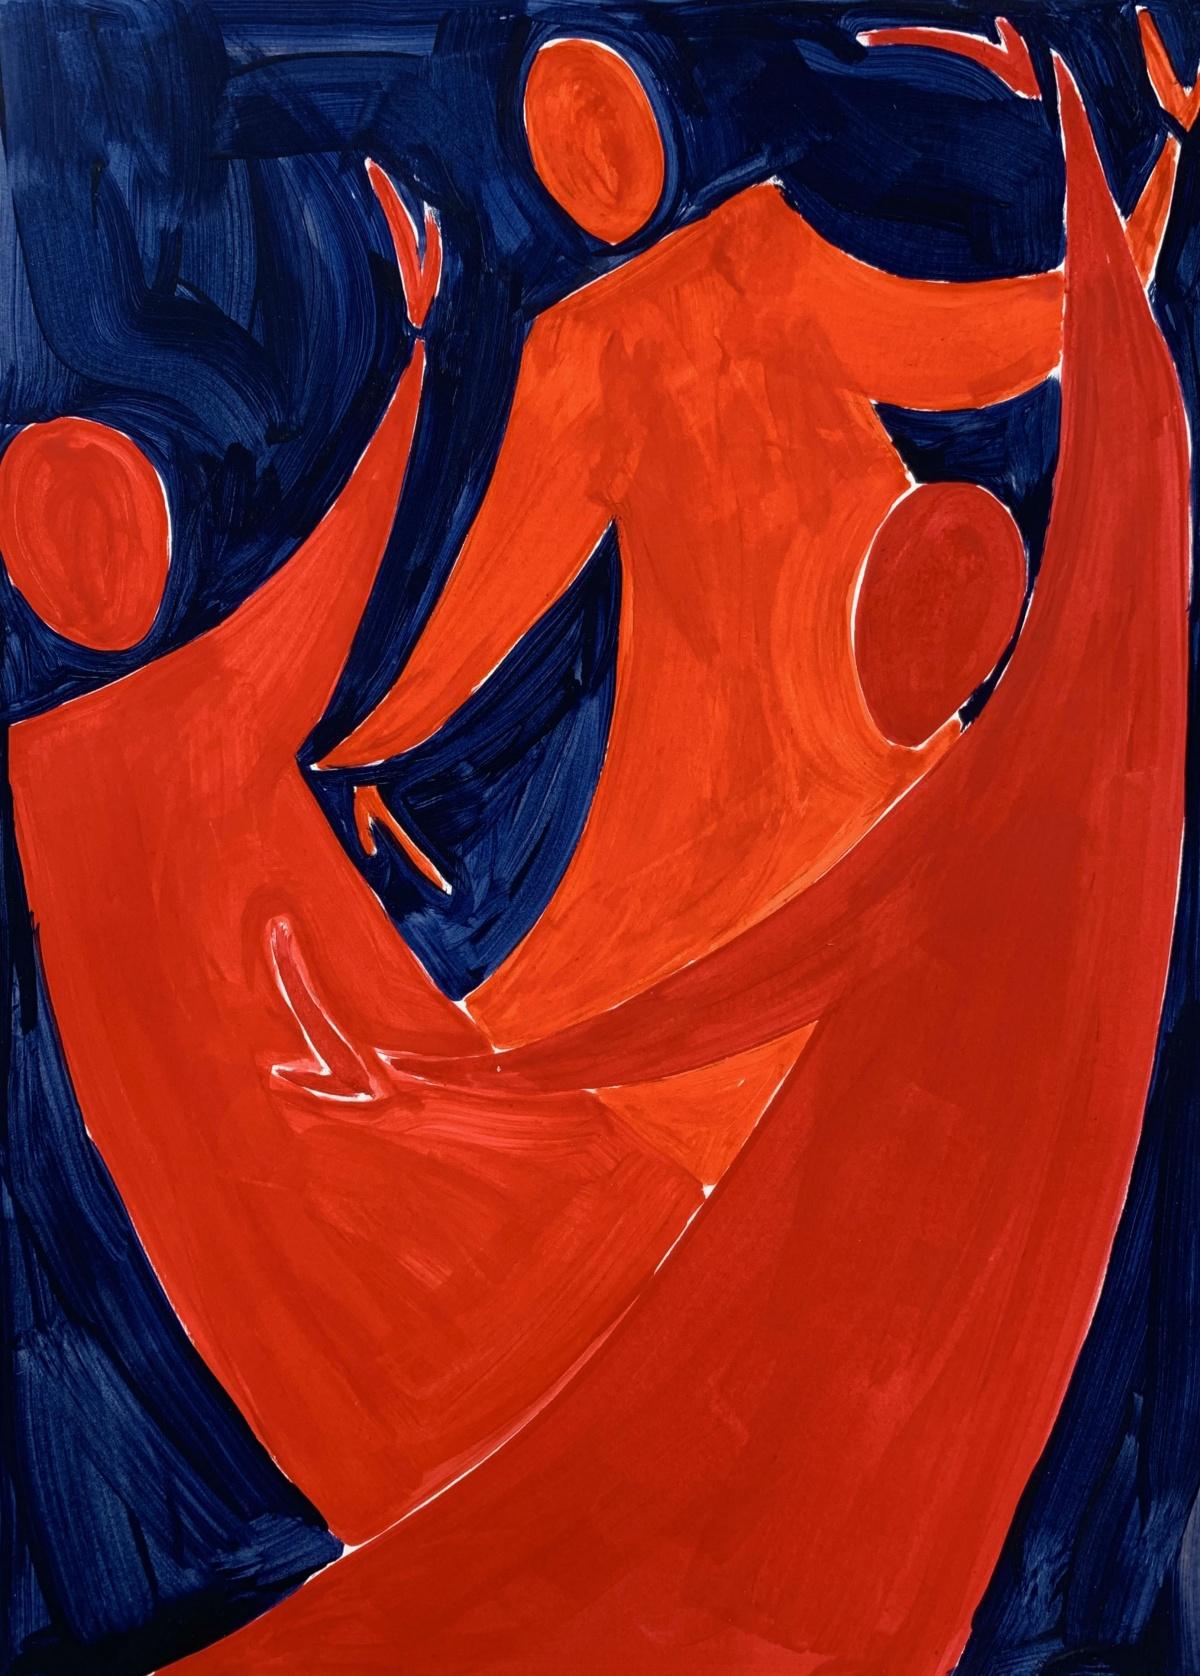 Une danse - Peinture figurative sur papier, jeune art, colorée, vibrante